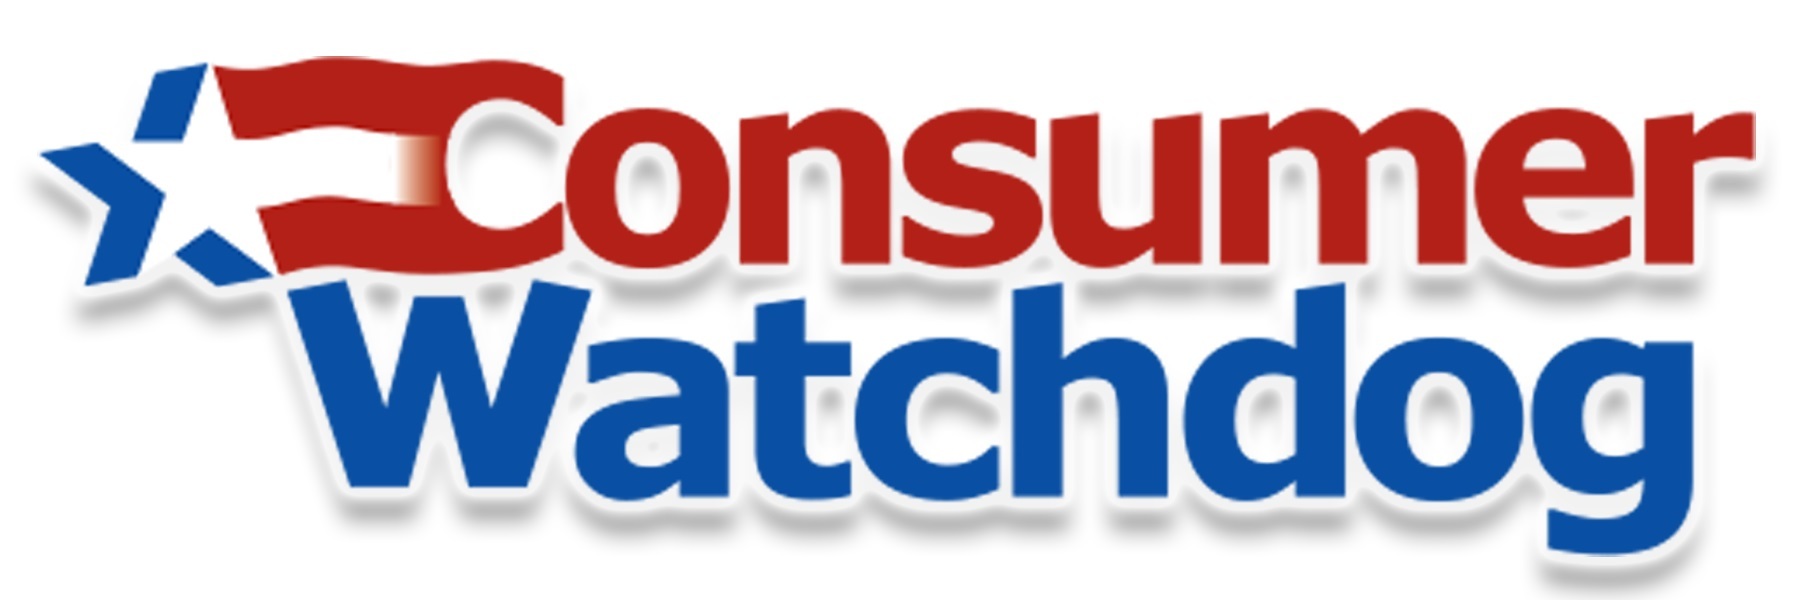 Consumer Watchdog Logo (PRNewsfoto/Consumer Watchdog)